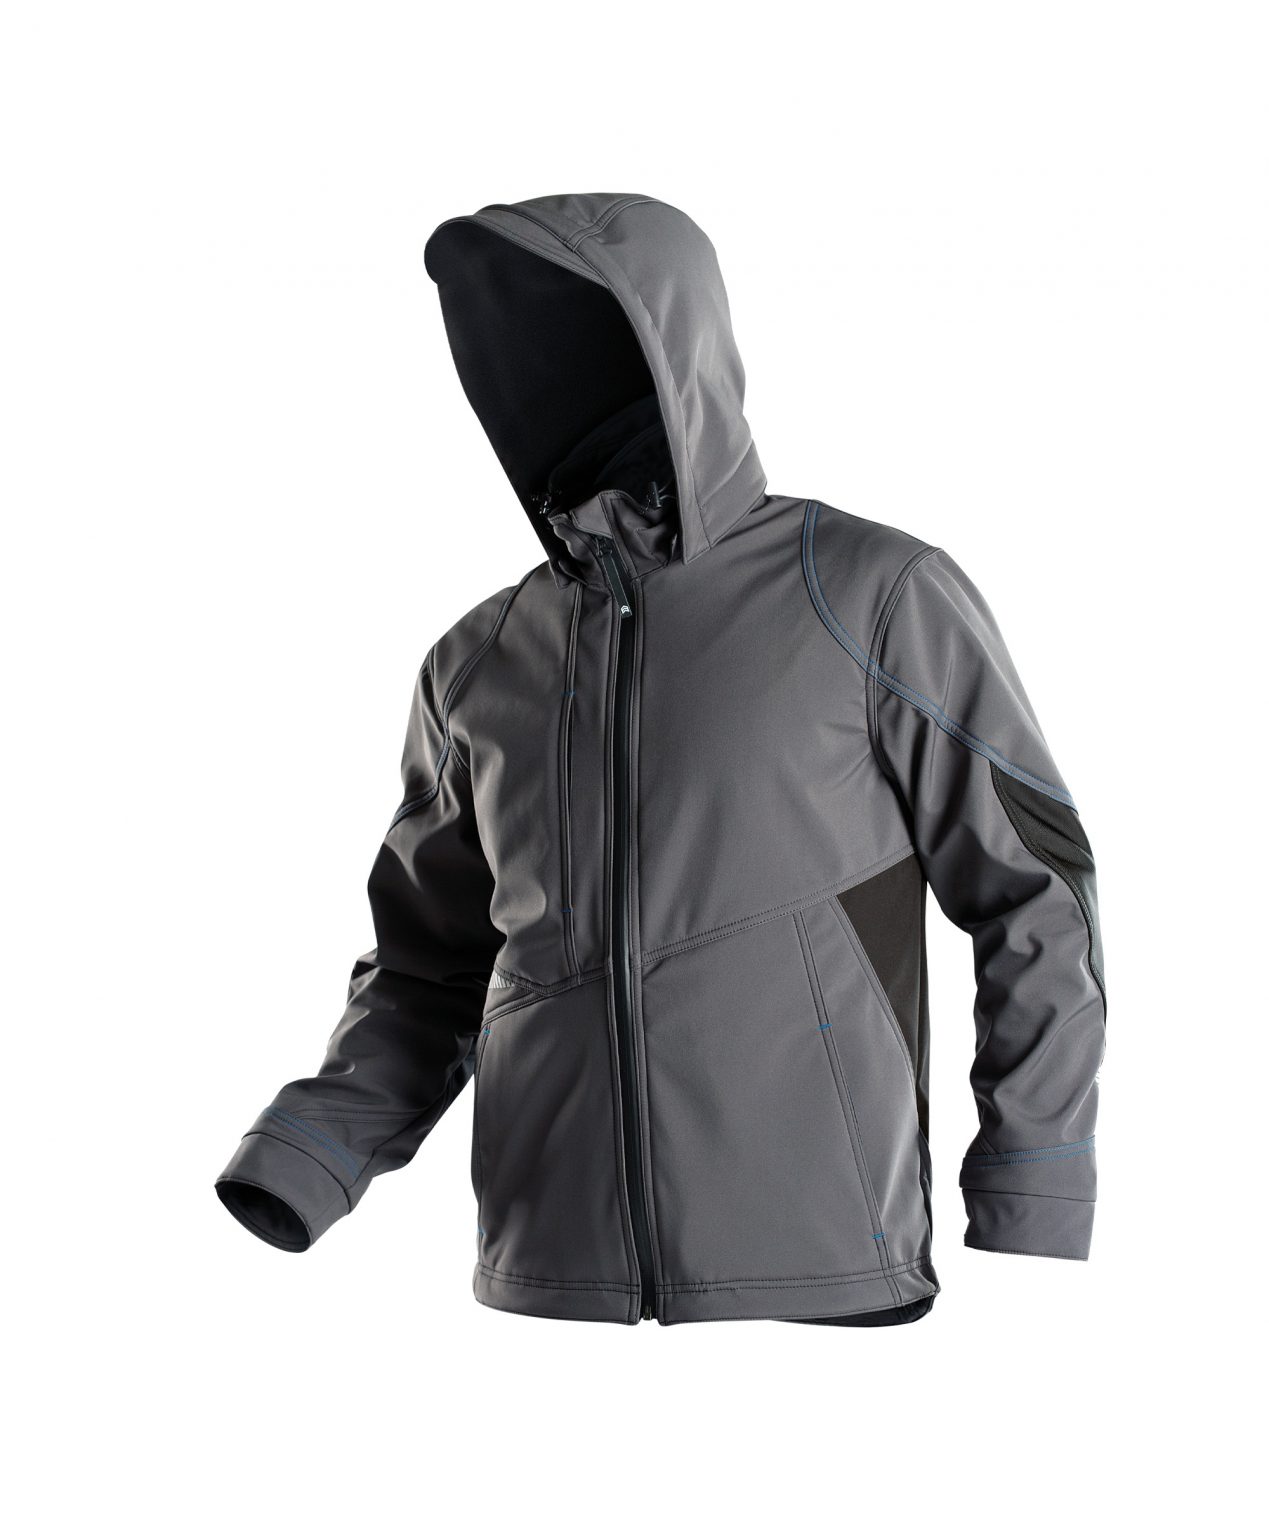 gravity softshell jacket anthracite grey black detail 2